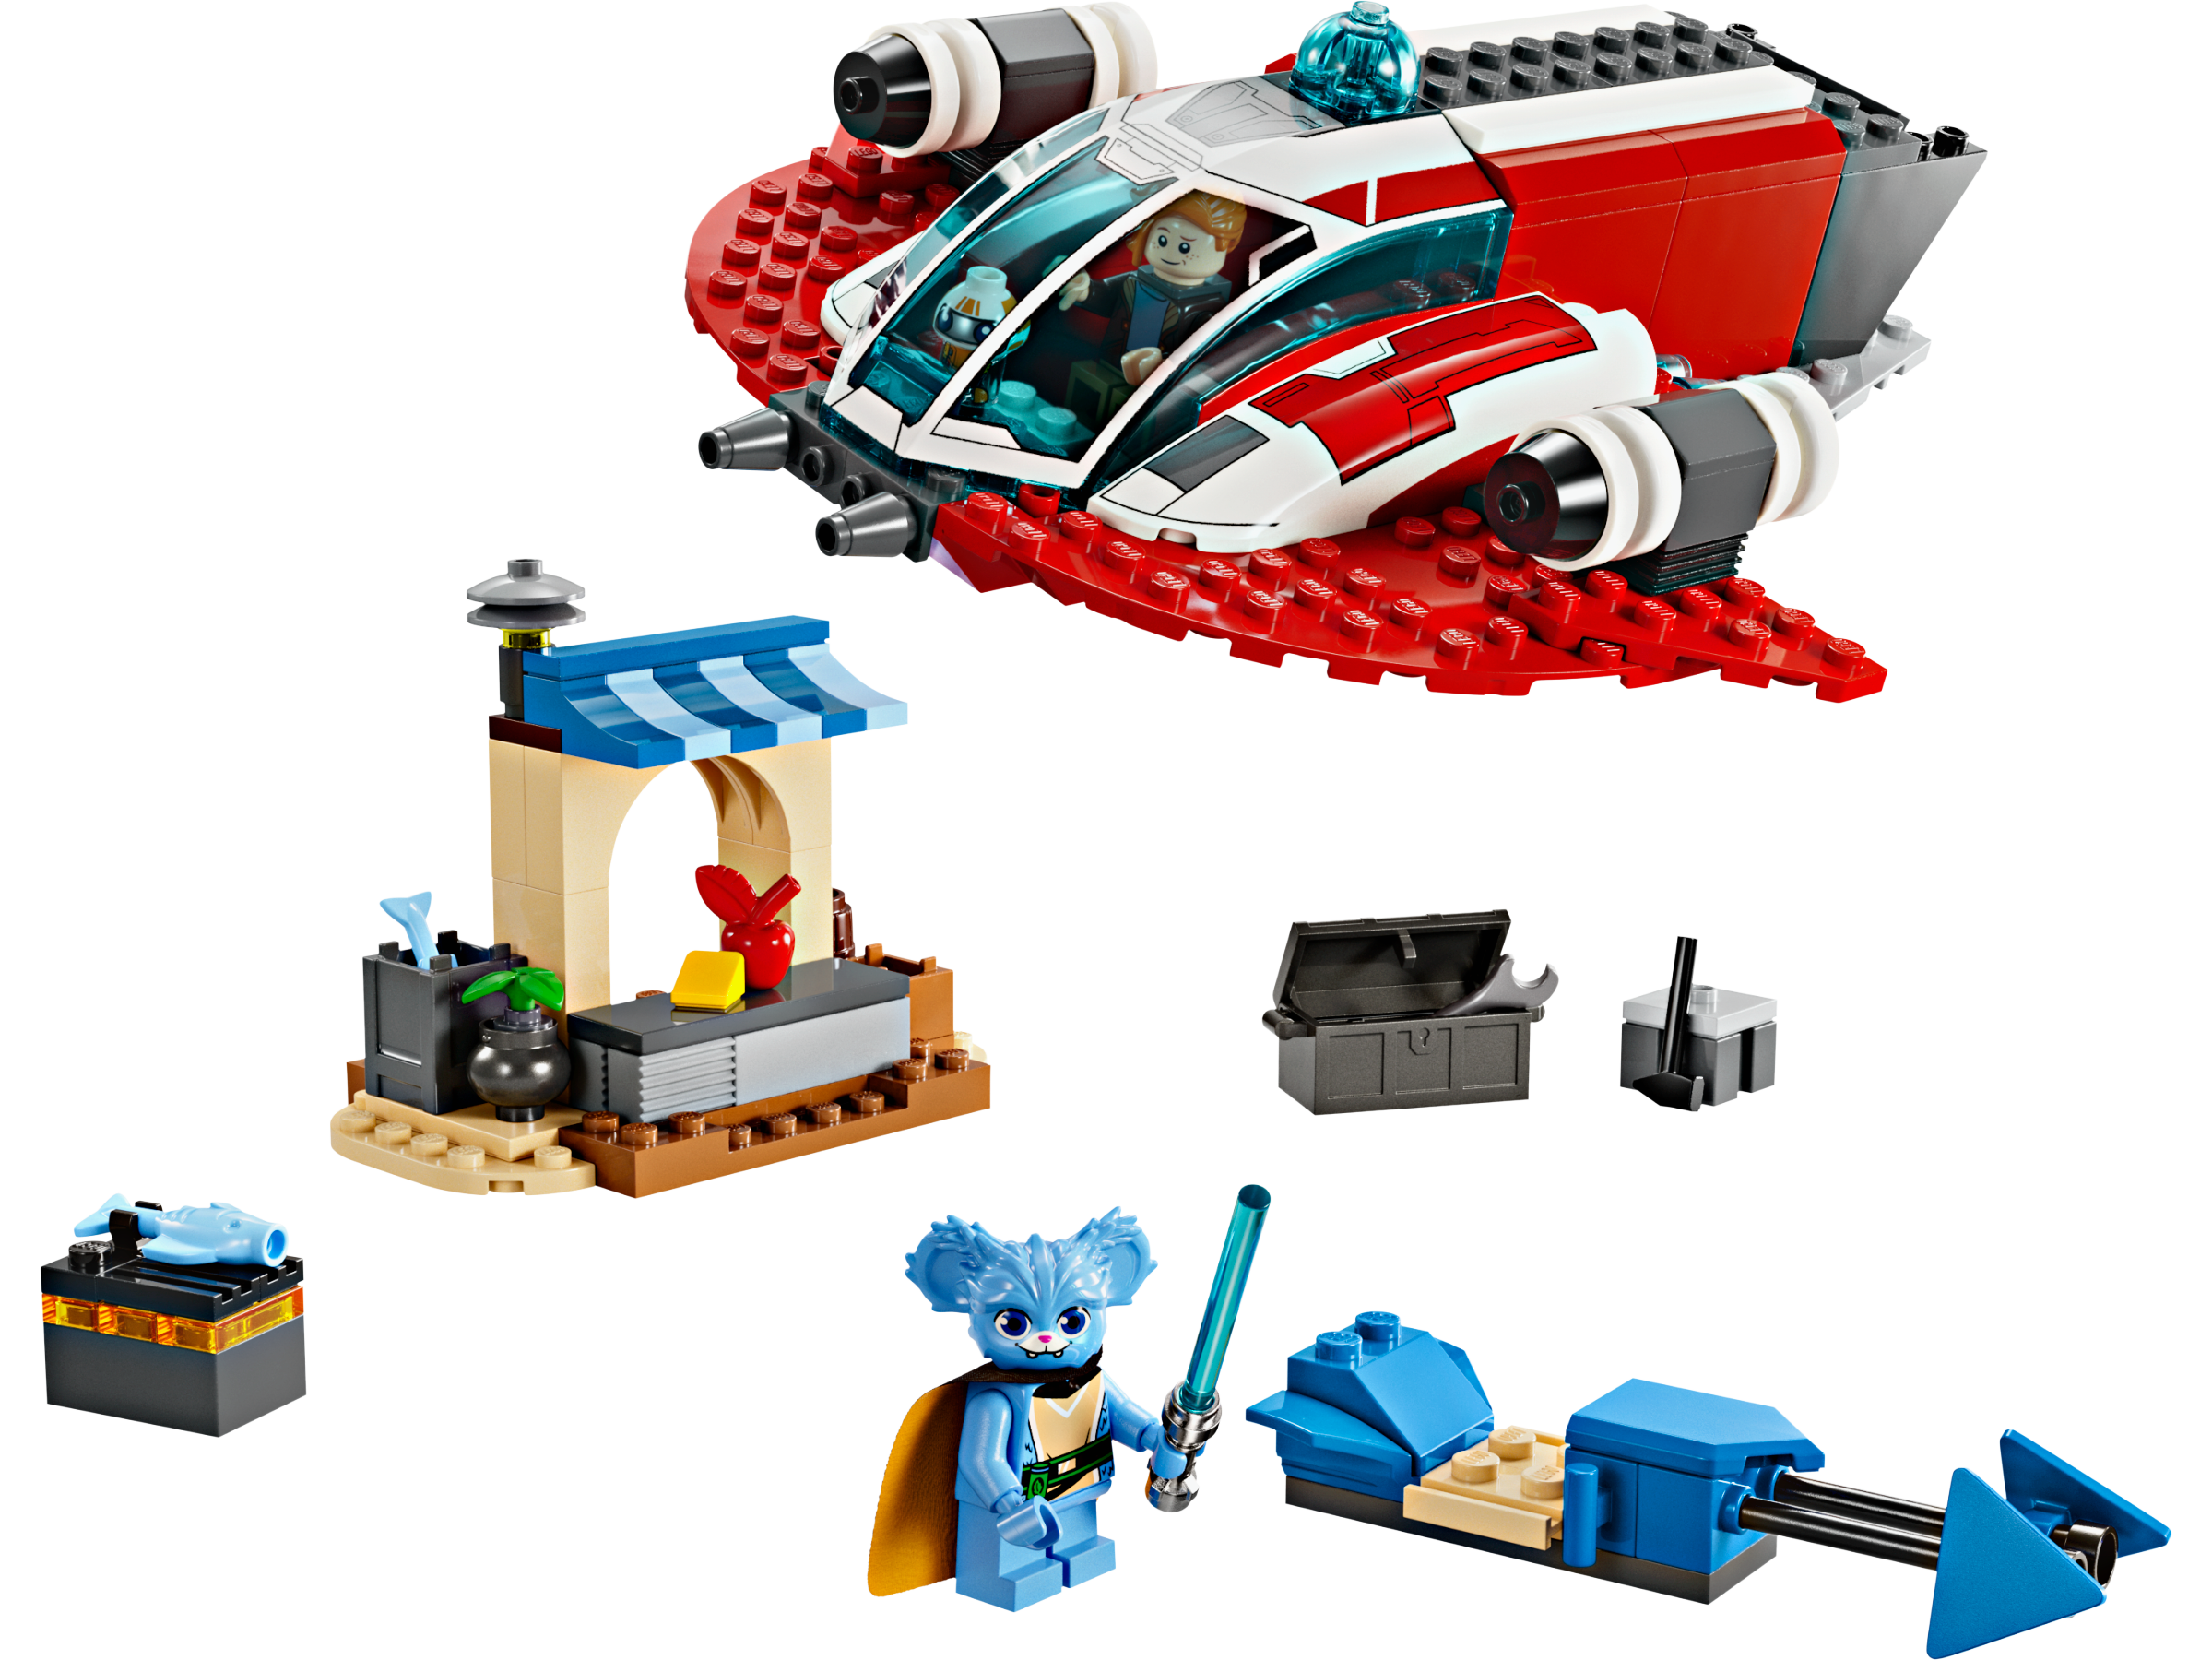 Jouets Star Wars™  Boutique LEGO® officielle FR